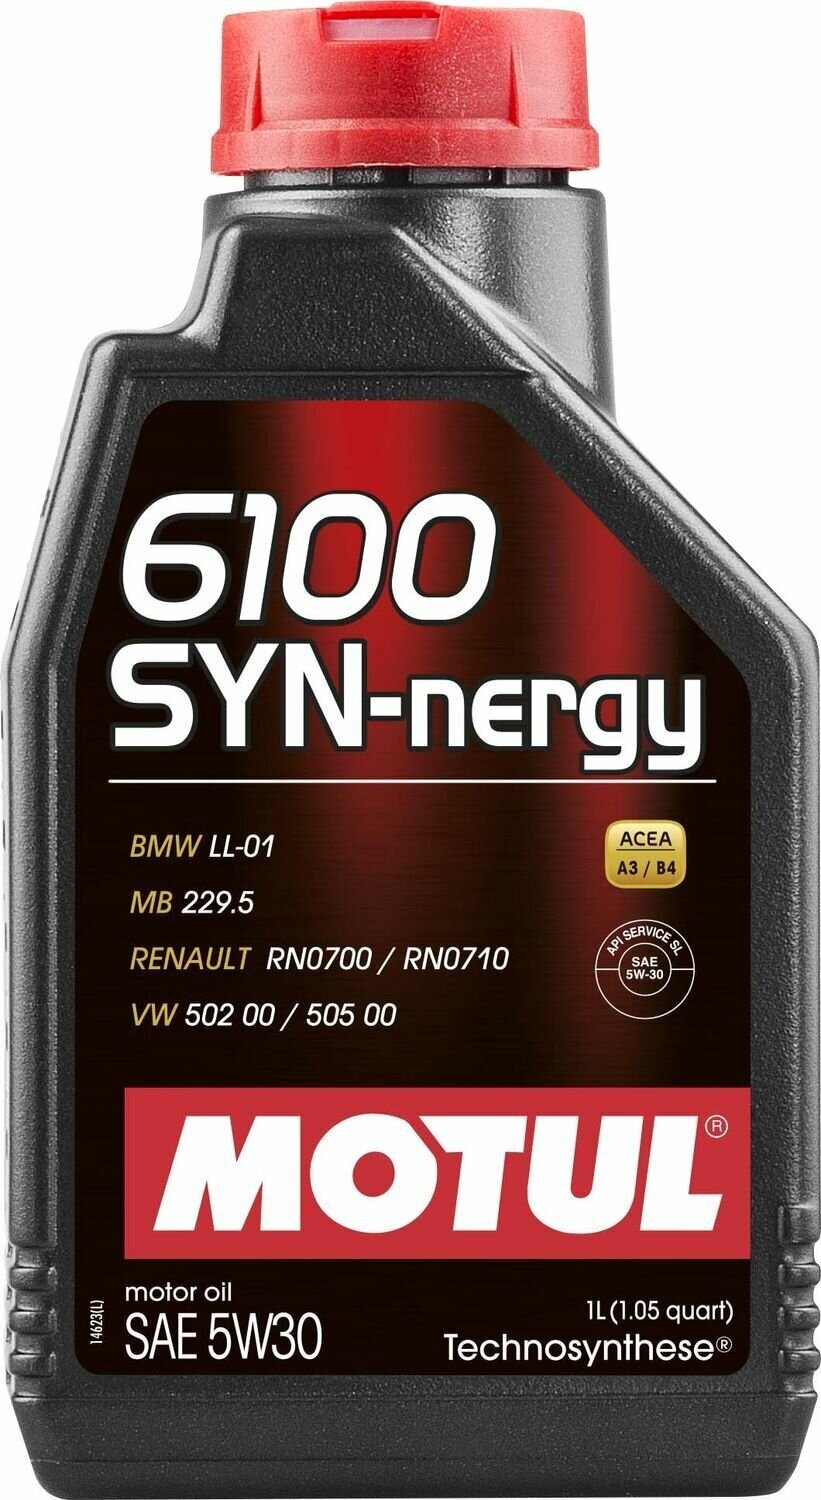 Синтетическое моторное масло Motul 6100 SYN-nergy 5W-30, 1 л